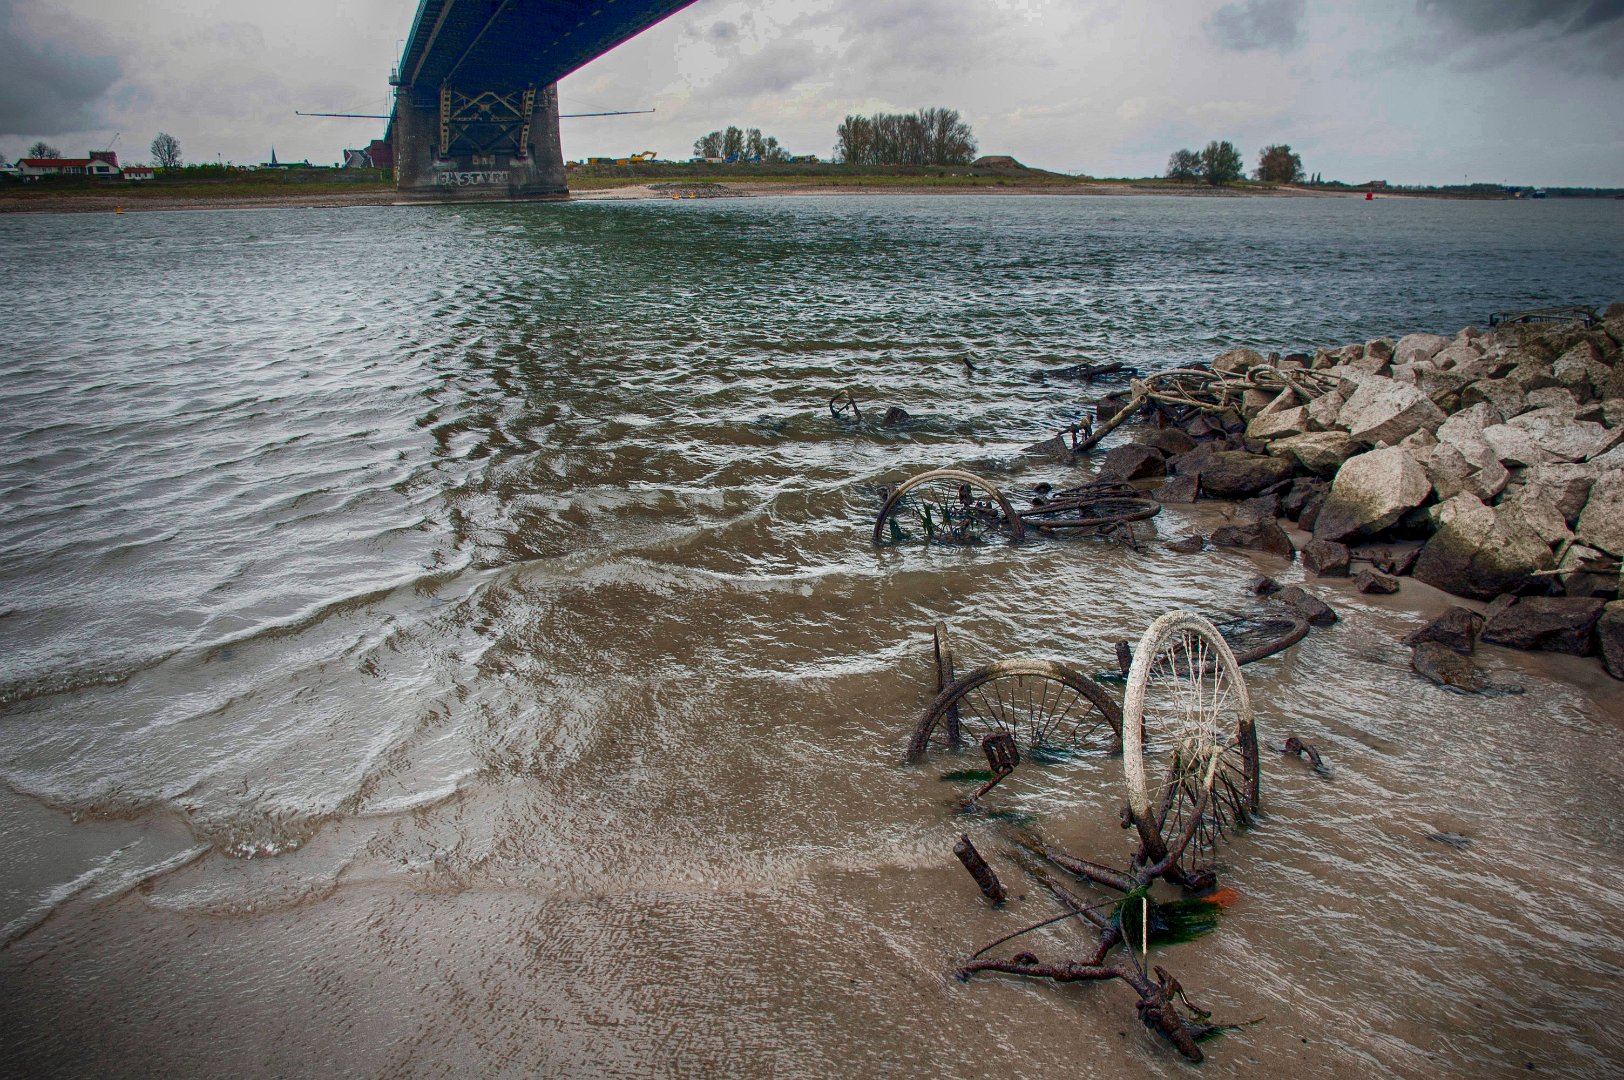 Verdwijnend water | Waal Nijmegen | Foto © Henk Beenen